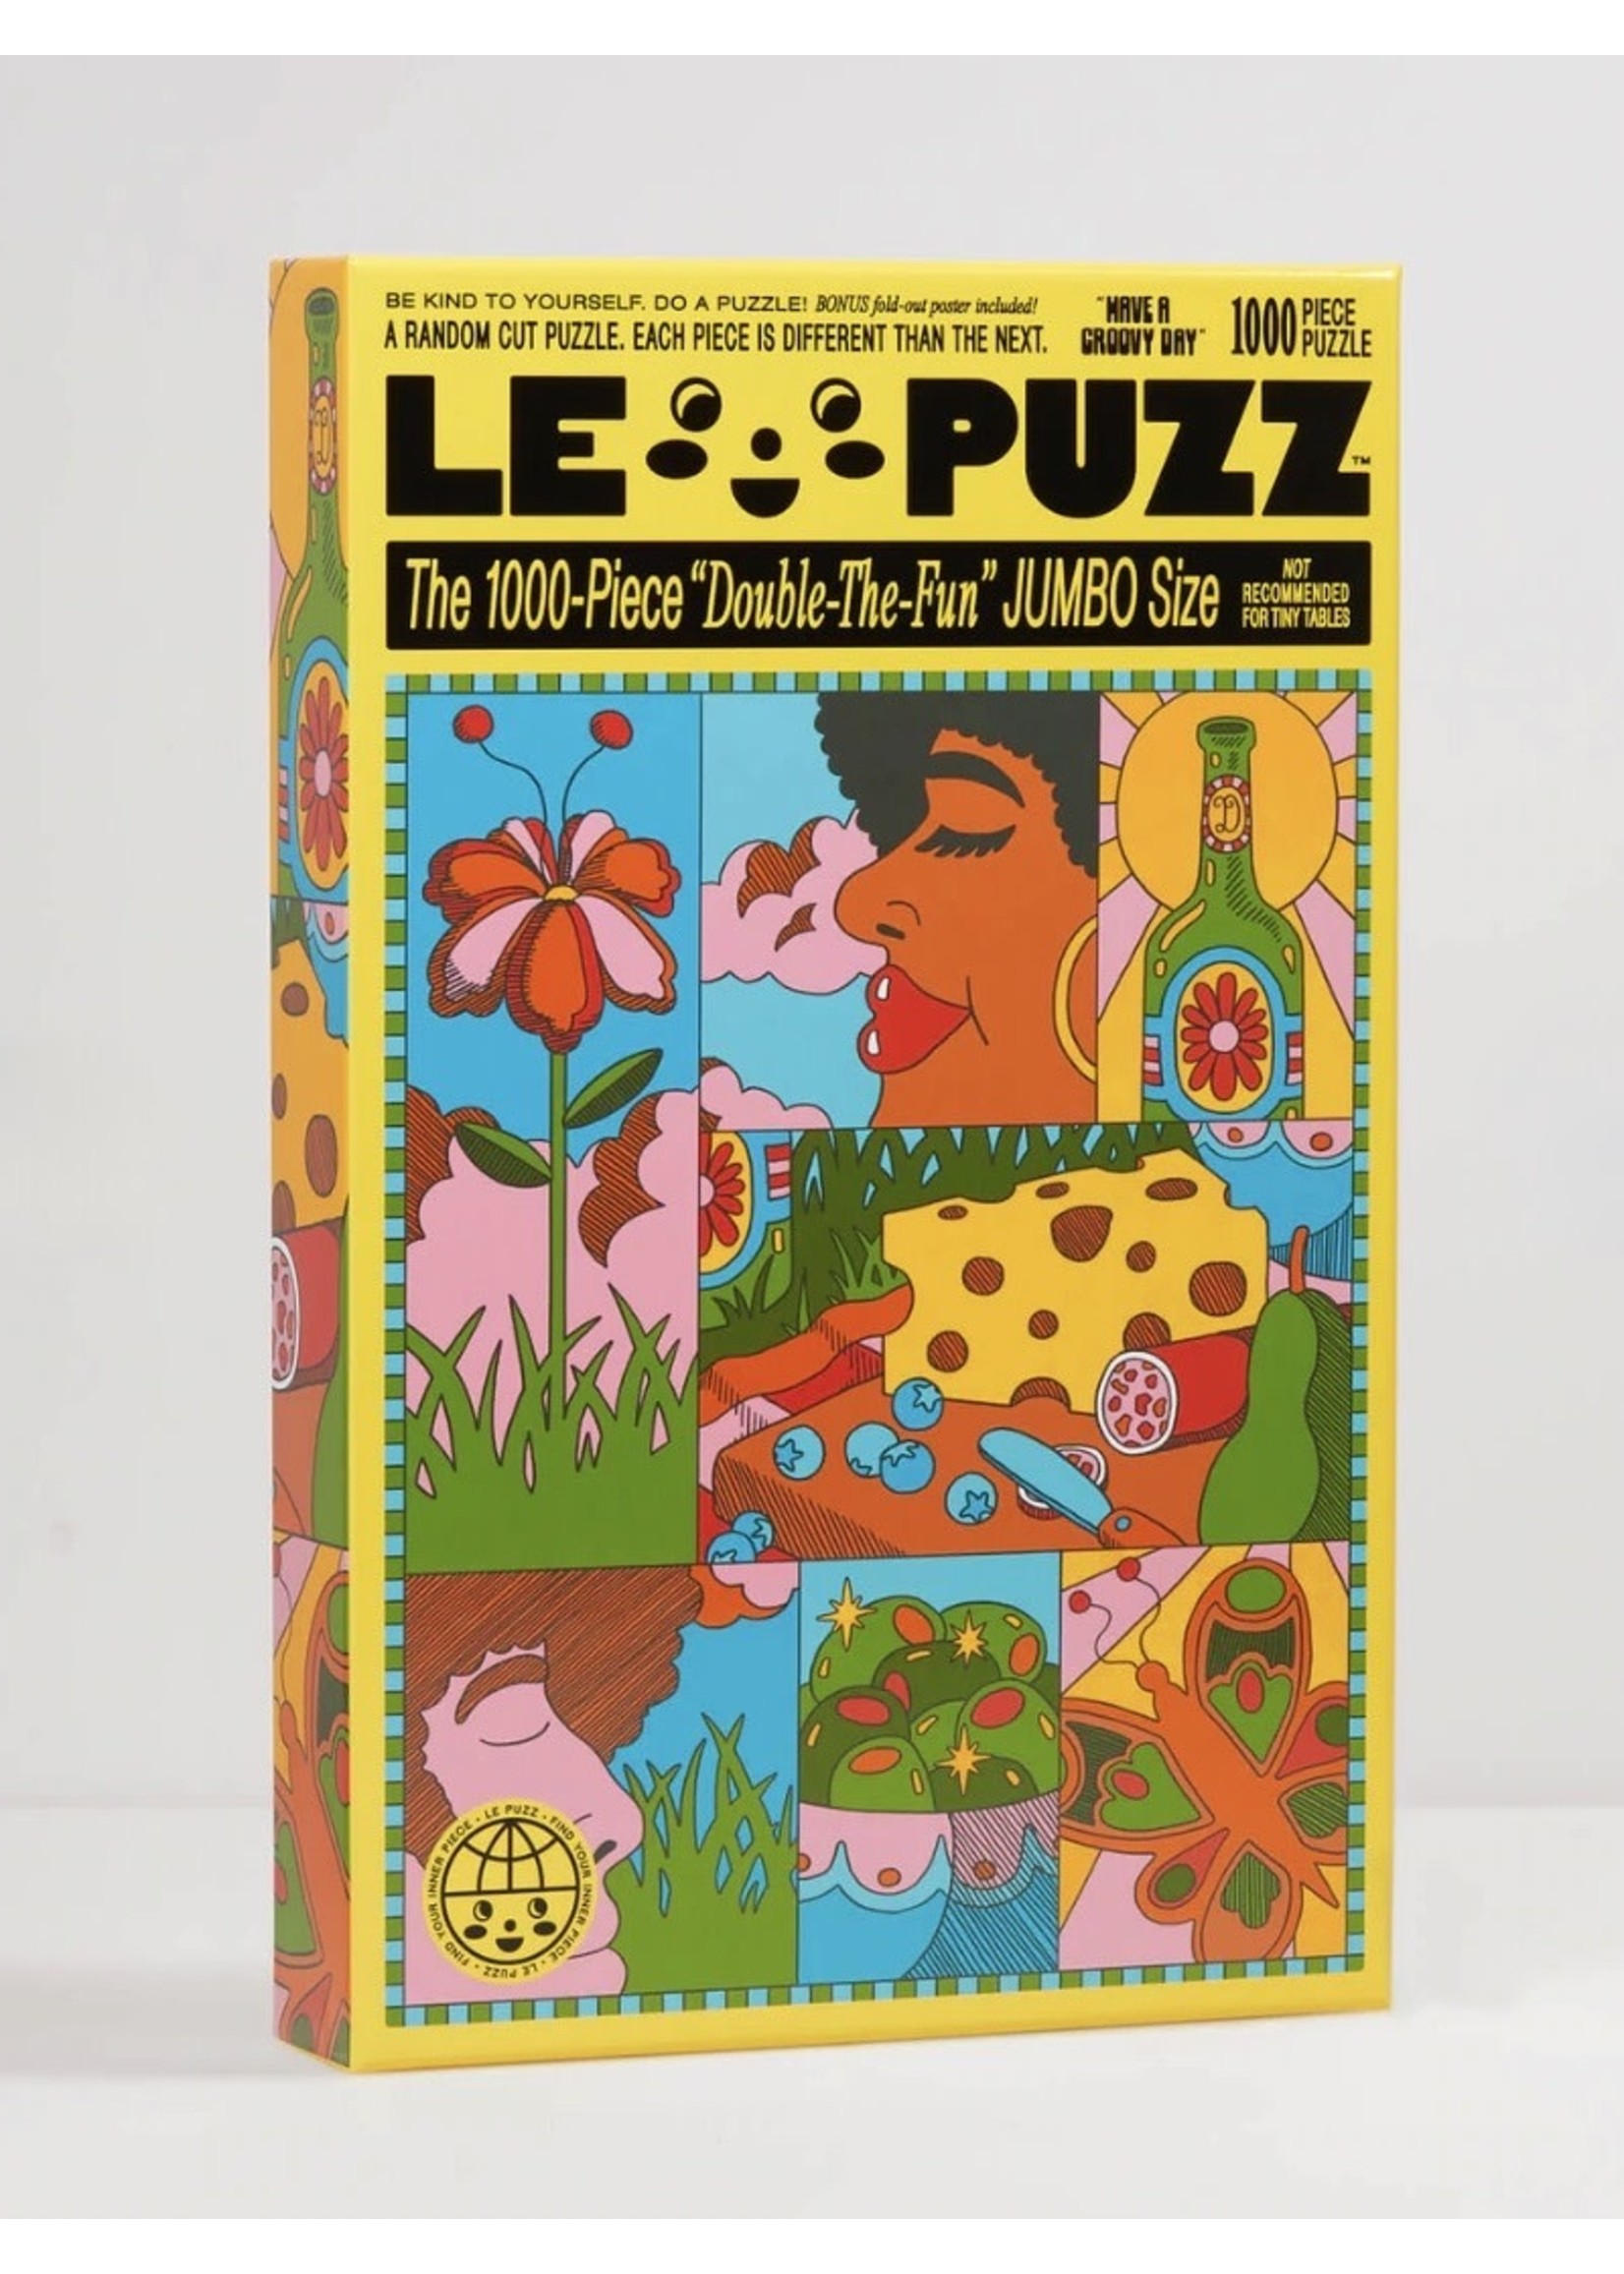 Le Puzz Casse-têtes "1000 pièces" par LE PUZZ